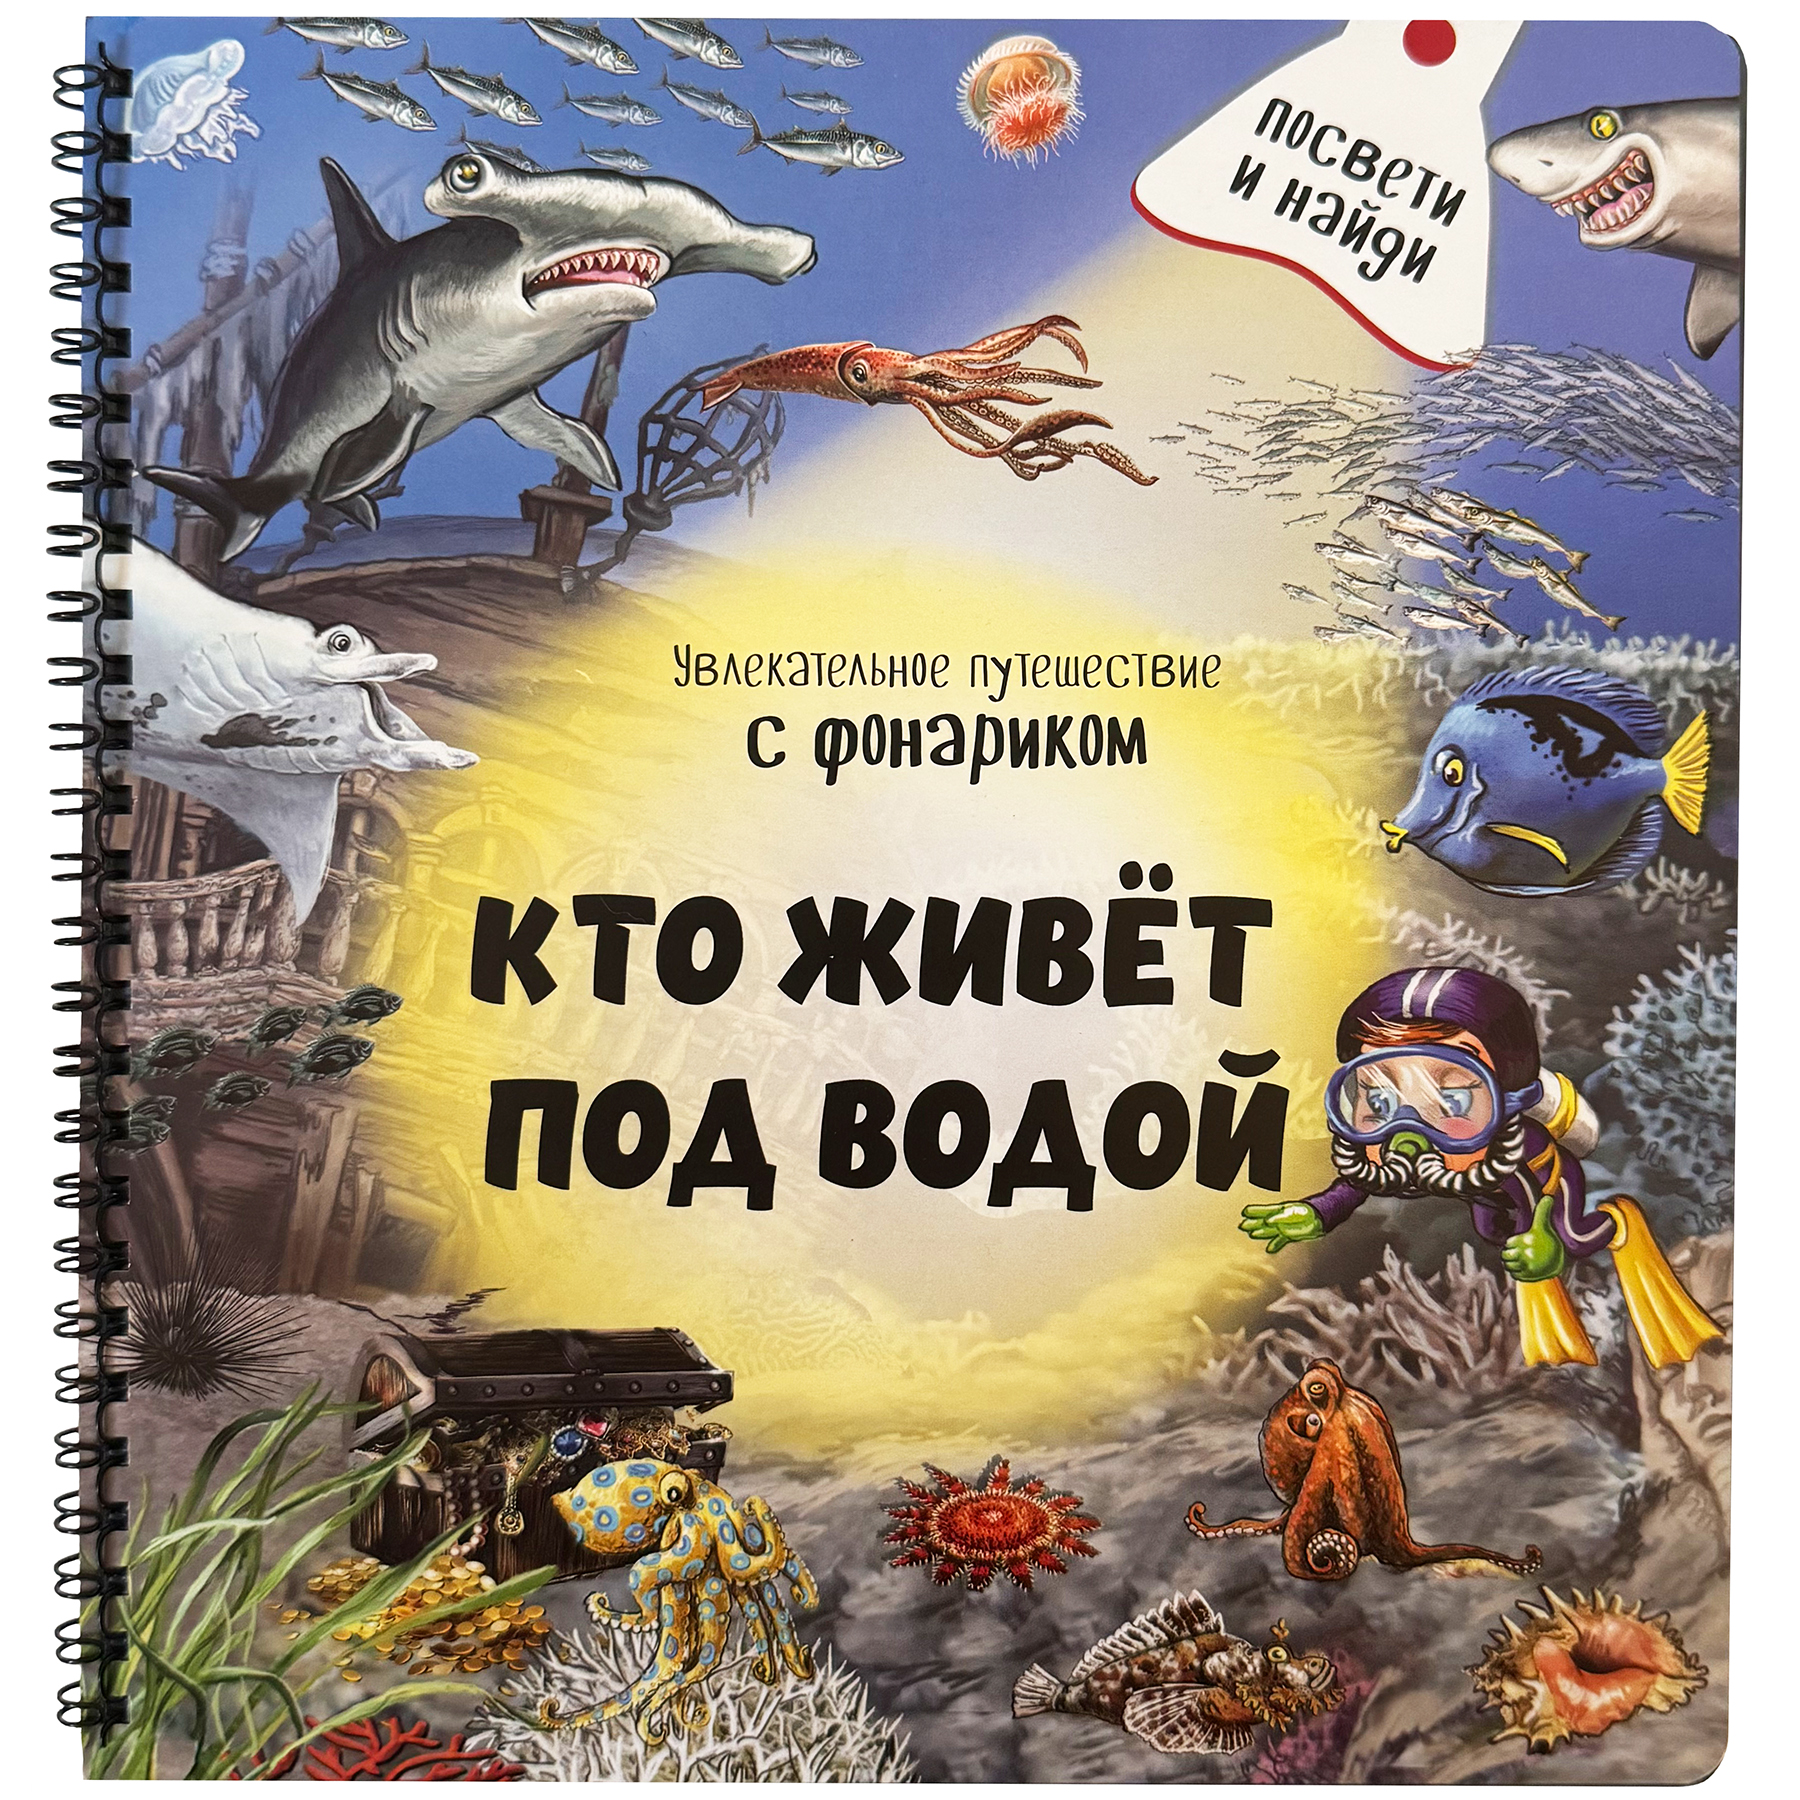 Детская книга BimBiMon с фонариком Кто живёт под водой? - фото 2